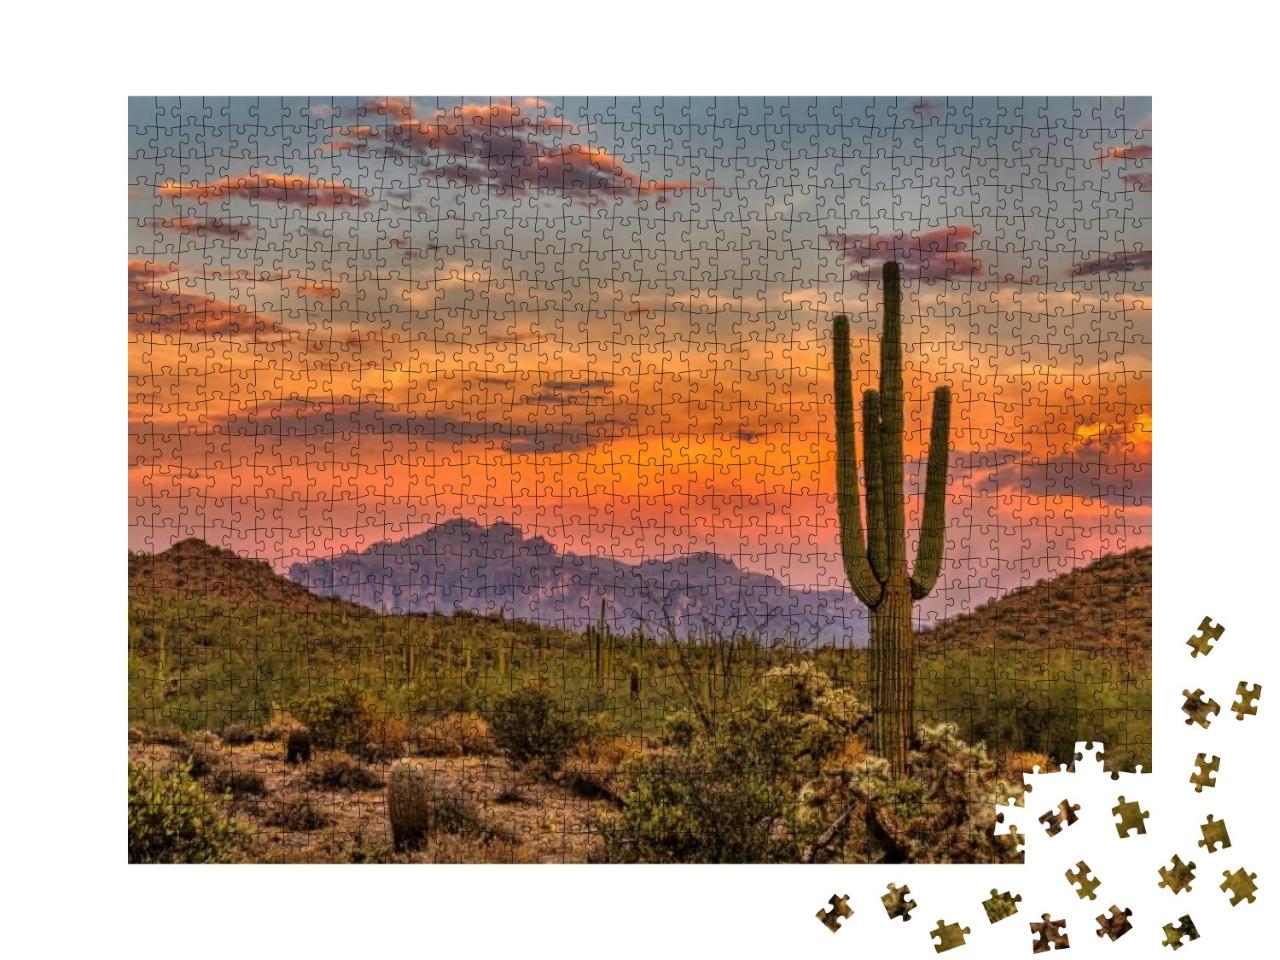 Puzzle 1000 Teile „Sonnenuntergang in der Sonoran-Wüste bei Phoenix, Arizona“